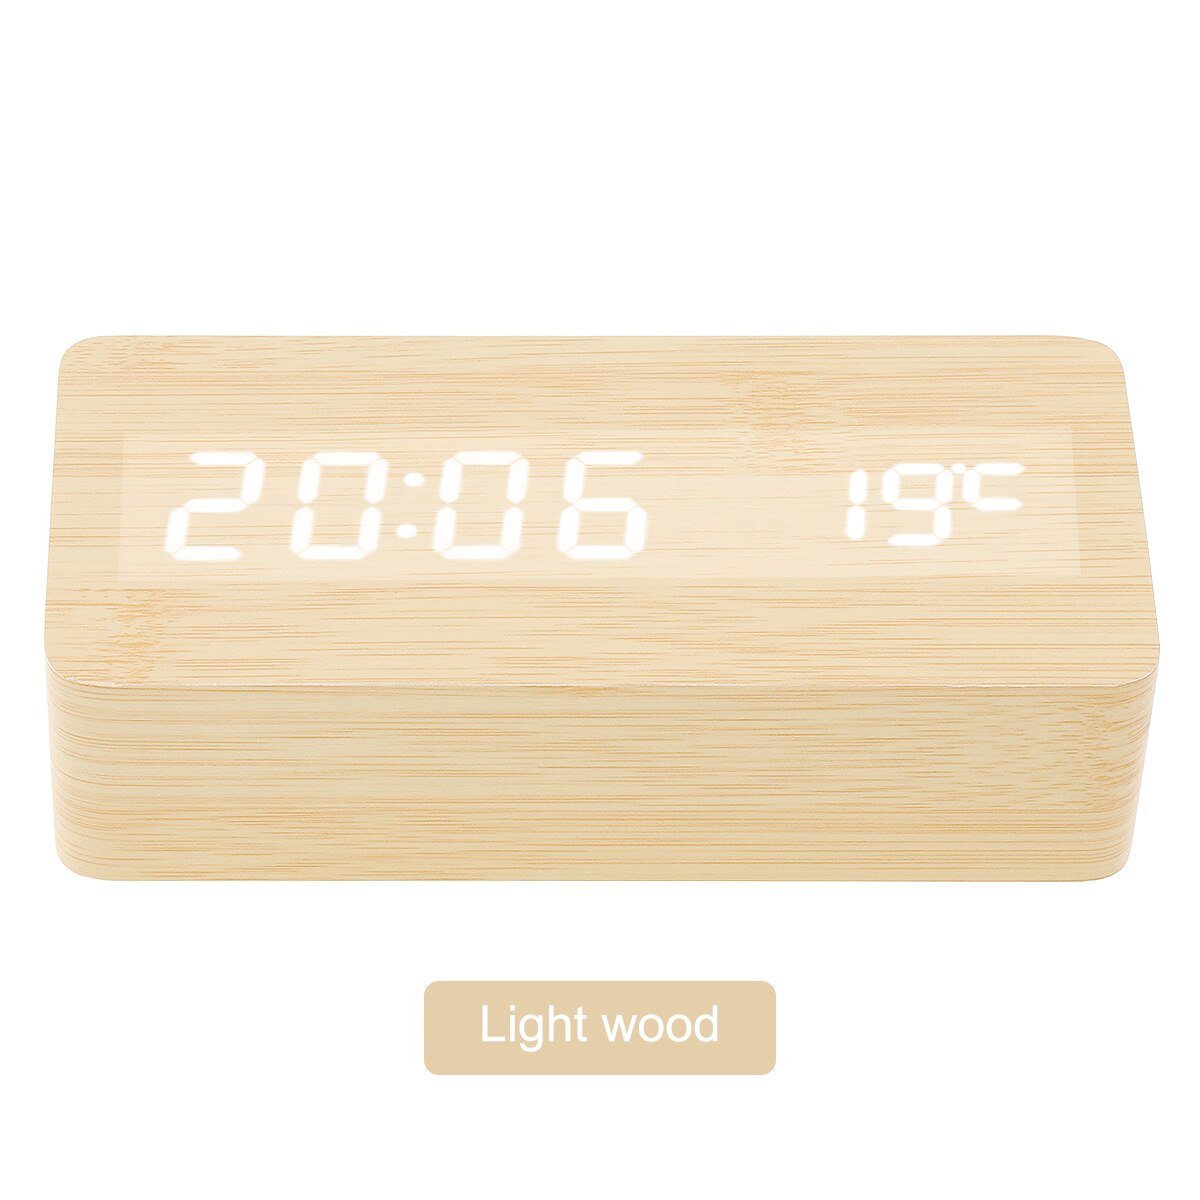 JD-03 Coklat Muda Jam Meja Motif Kayu Digital Led Weker / Desain Wood Alarm LED Clock Waker Suhu temperature date Tanggal Jam Kerja